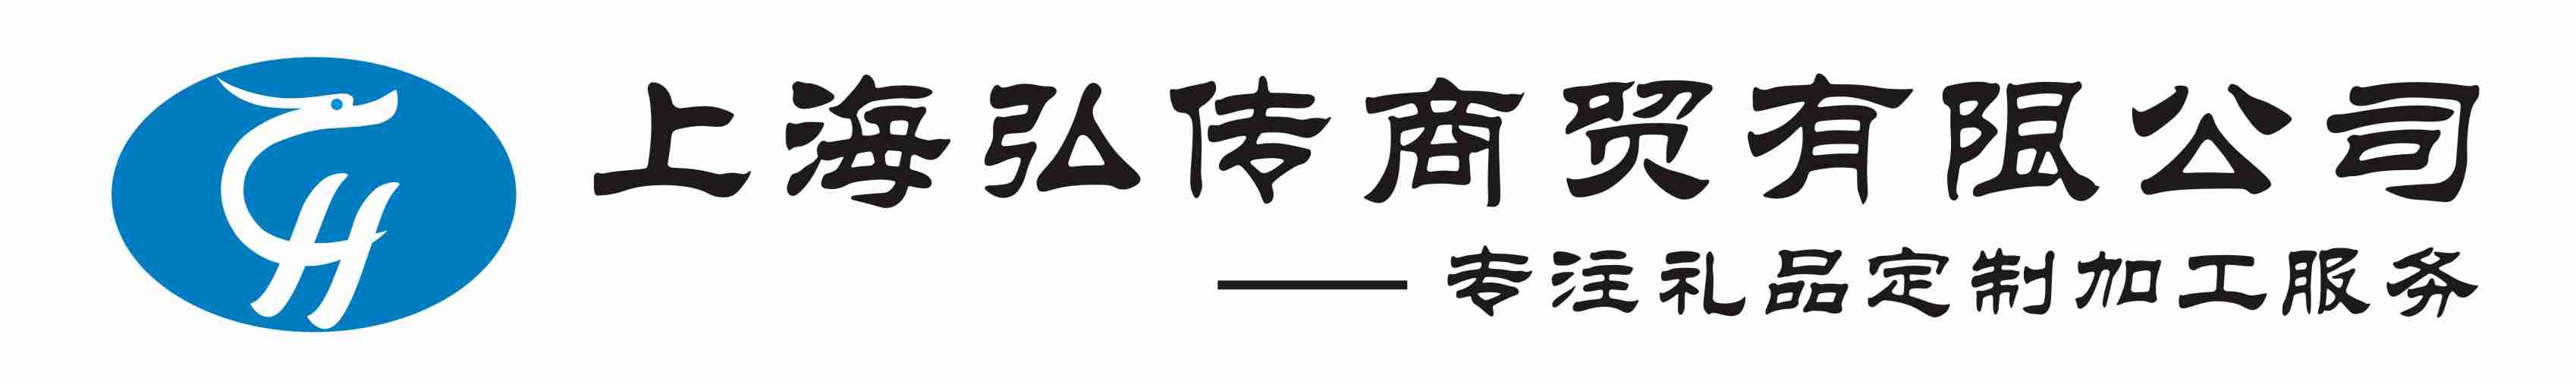 上海弘传礼品公司logo